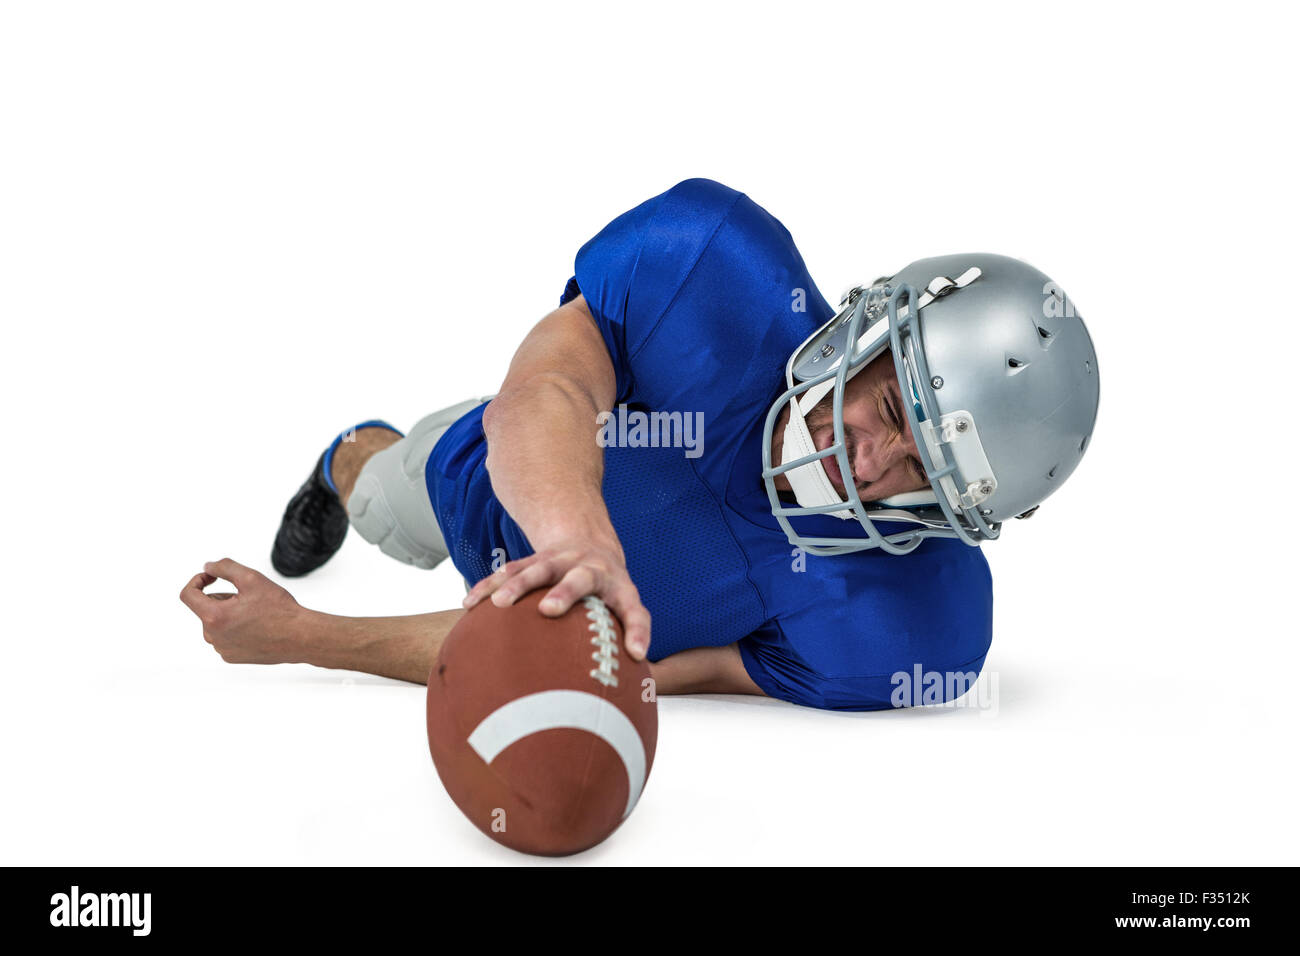 Joueur de football américain luttant pour attraper la balle Banque D'Images